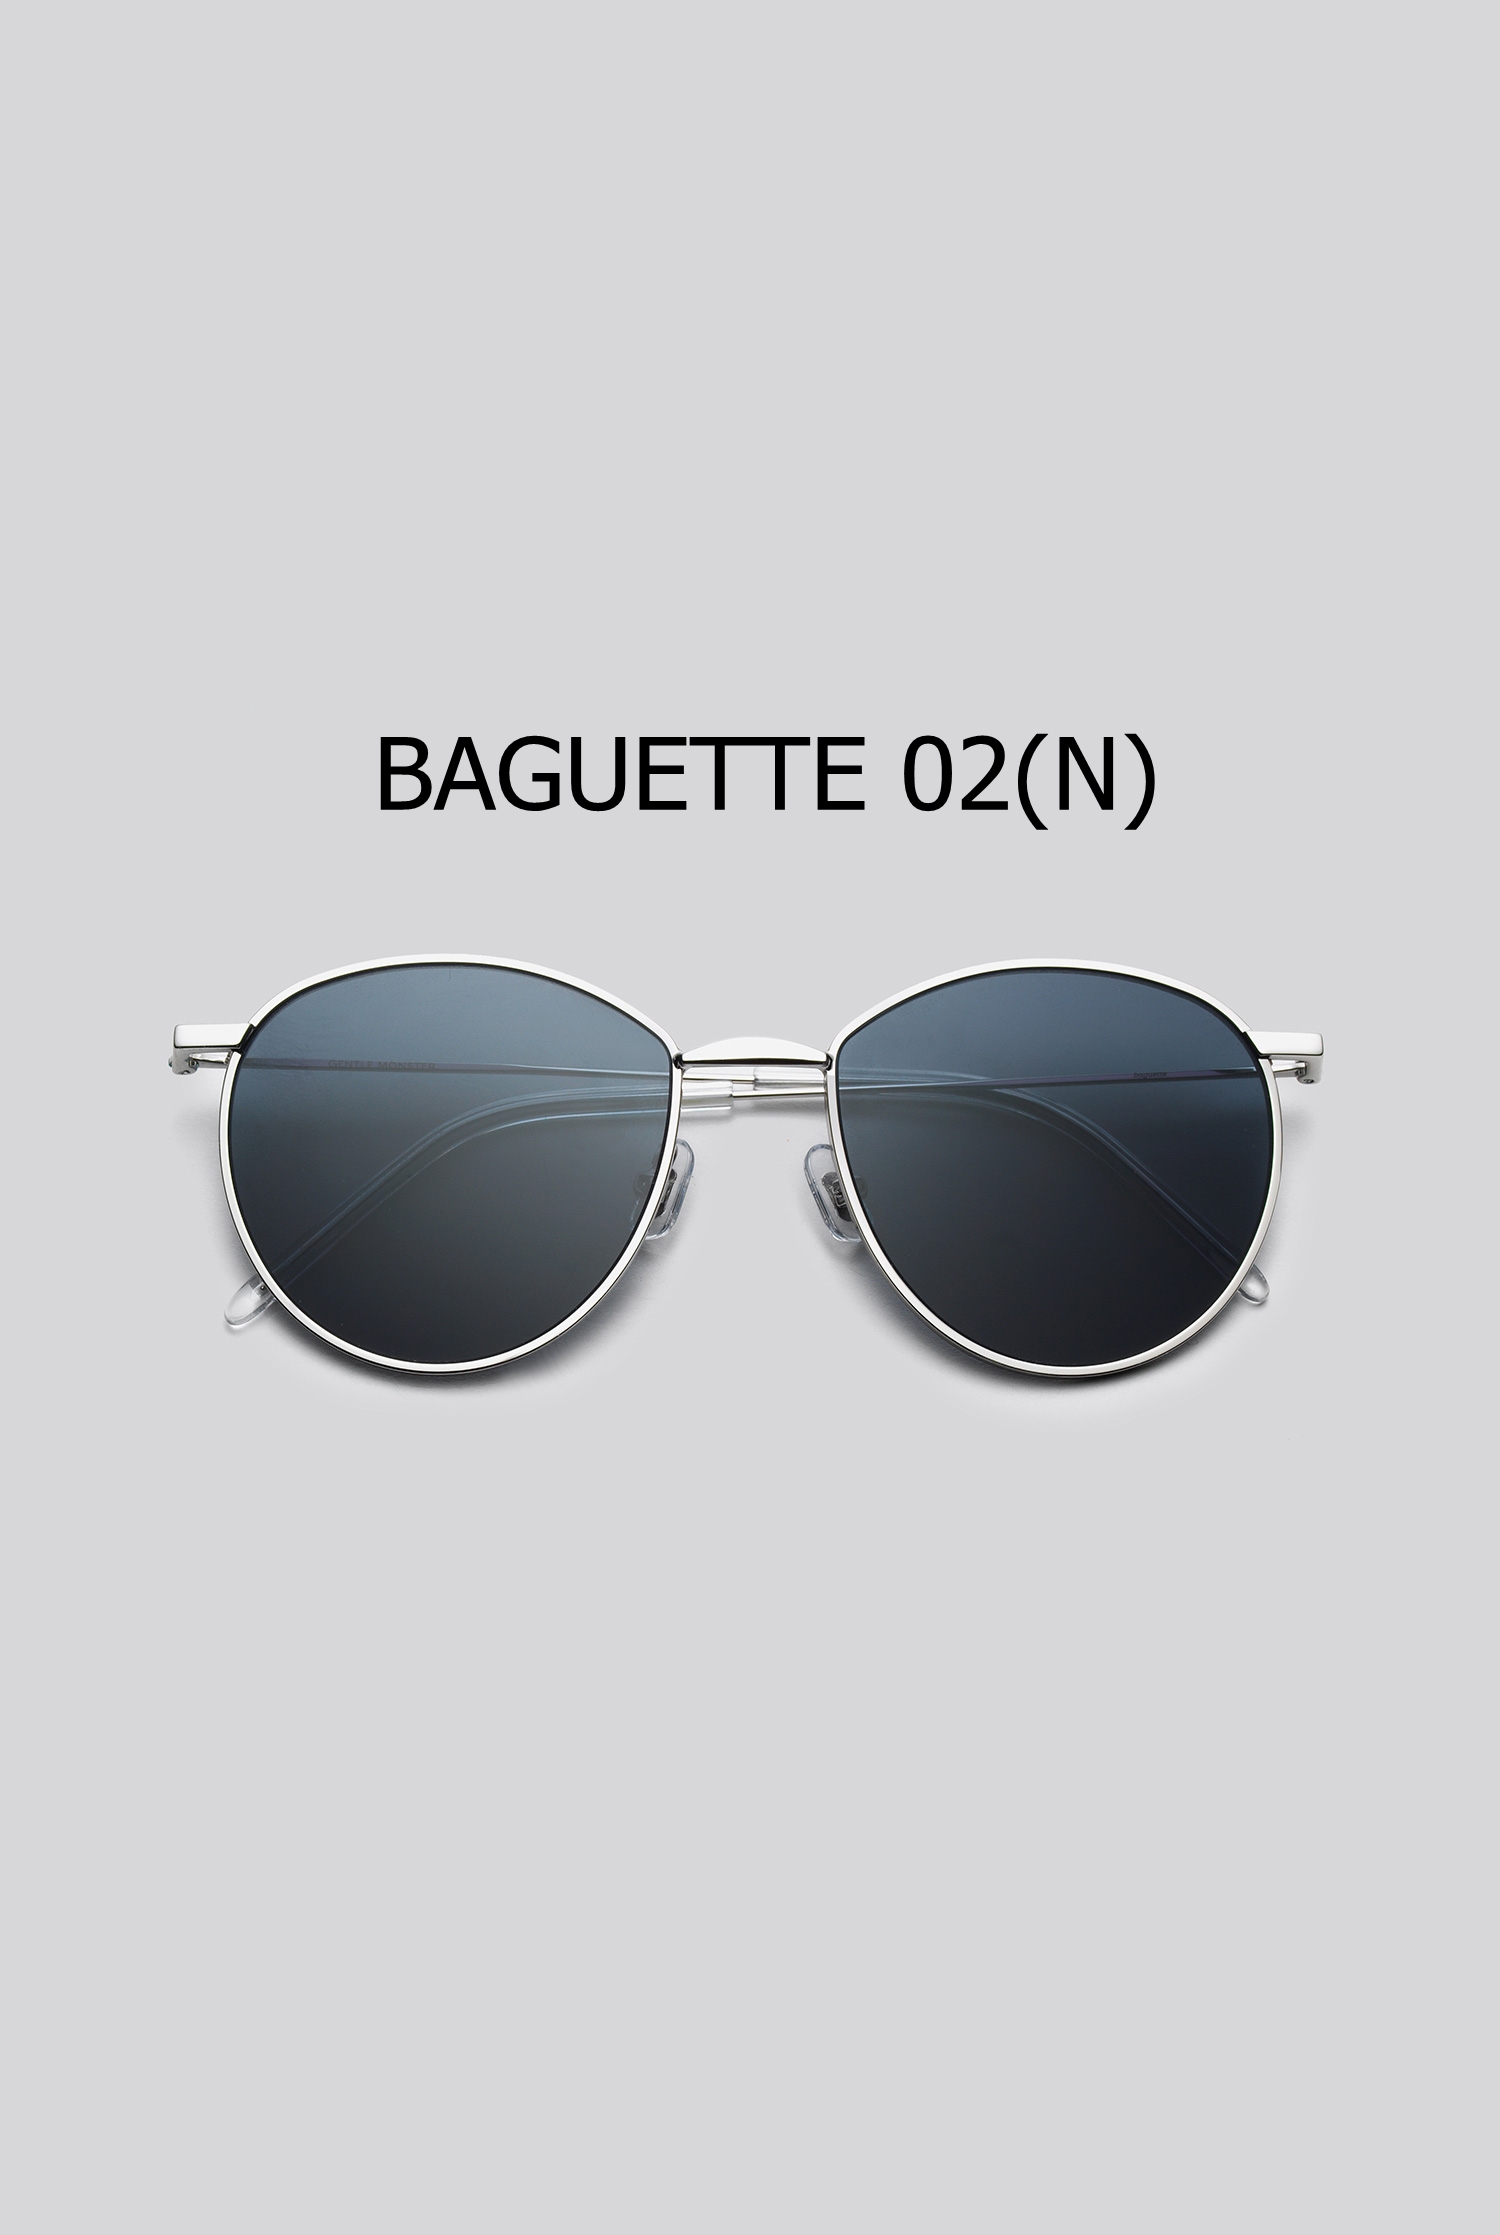 BAGUETTE 02(N)